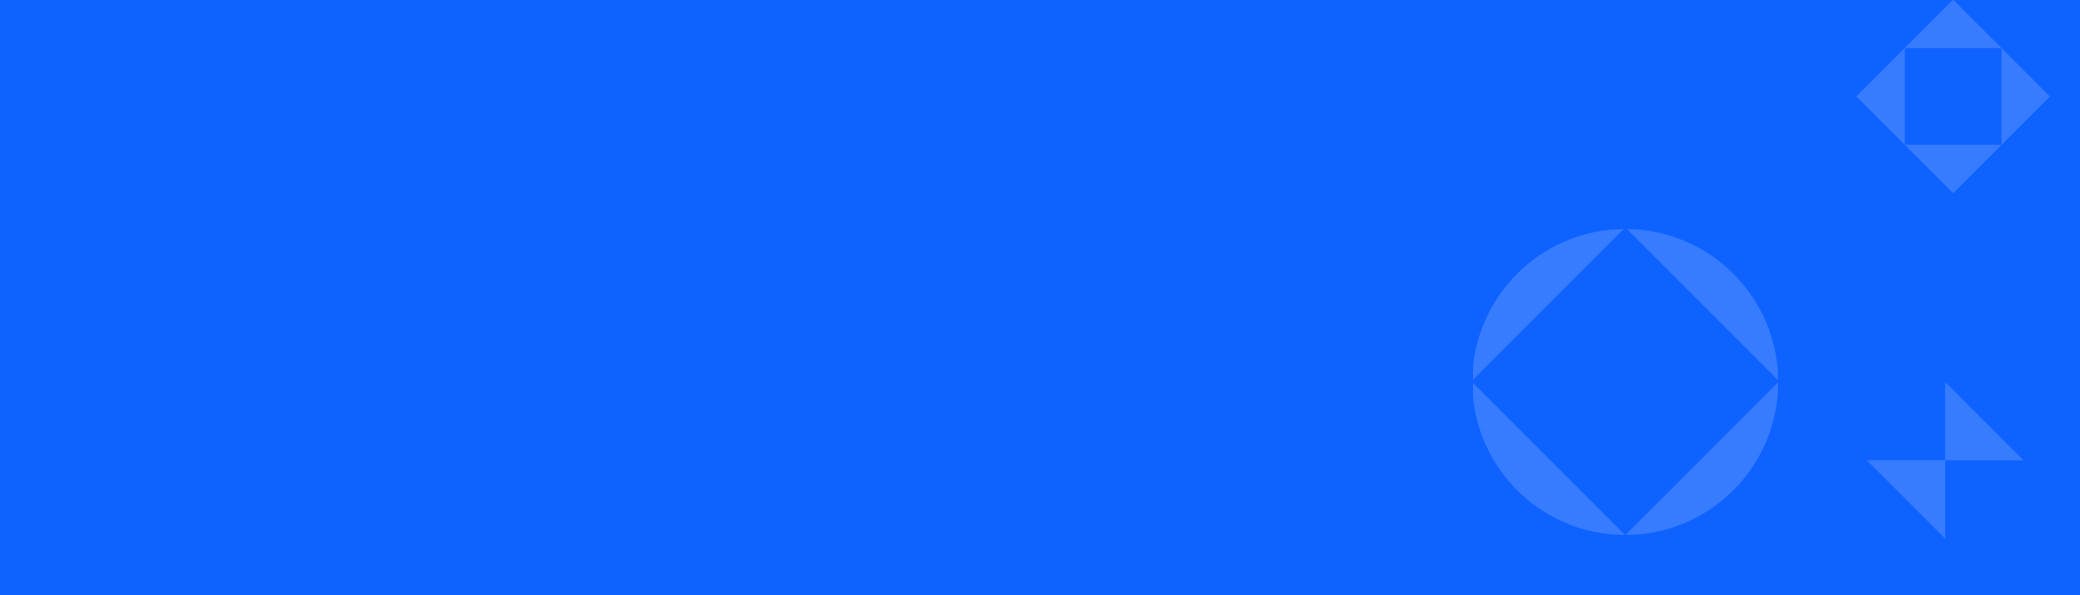 Resource Banner BG: Blue